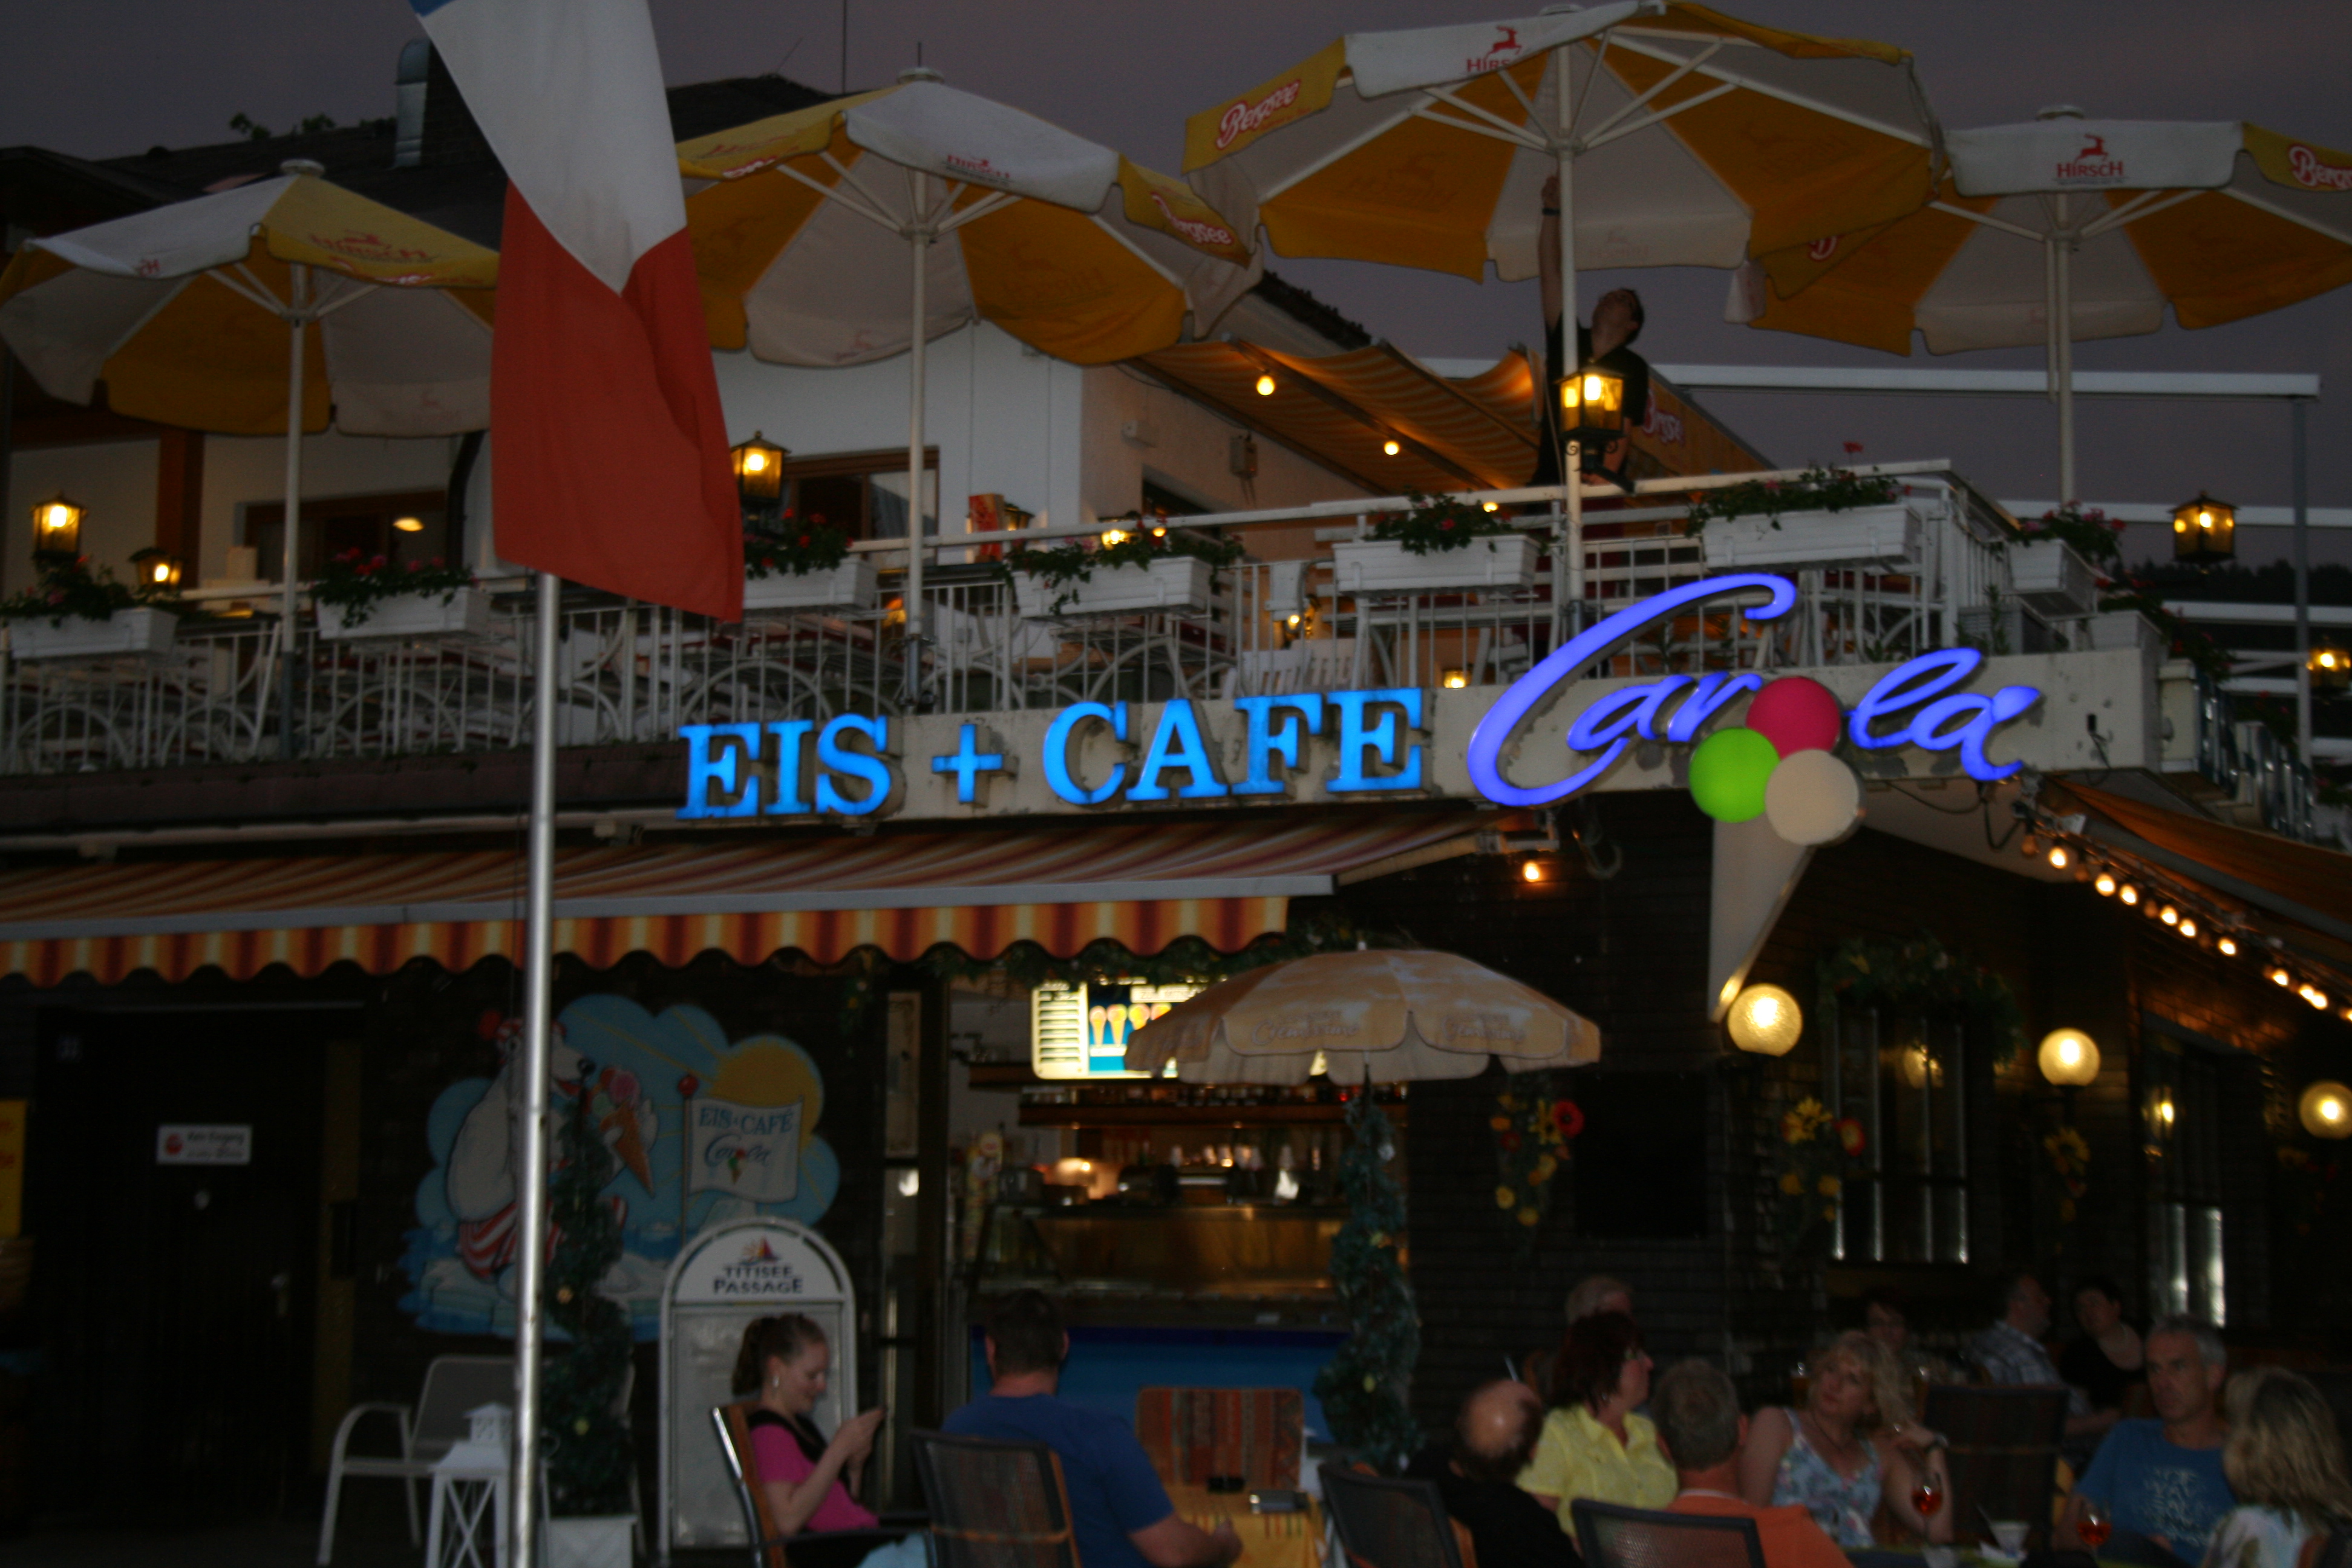 Bild 1 Eis + Café Carola am See in Titisee-Neustadt